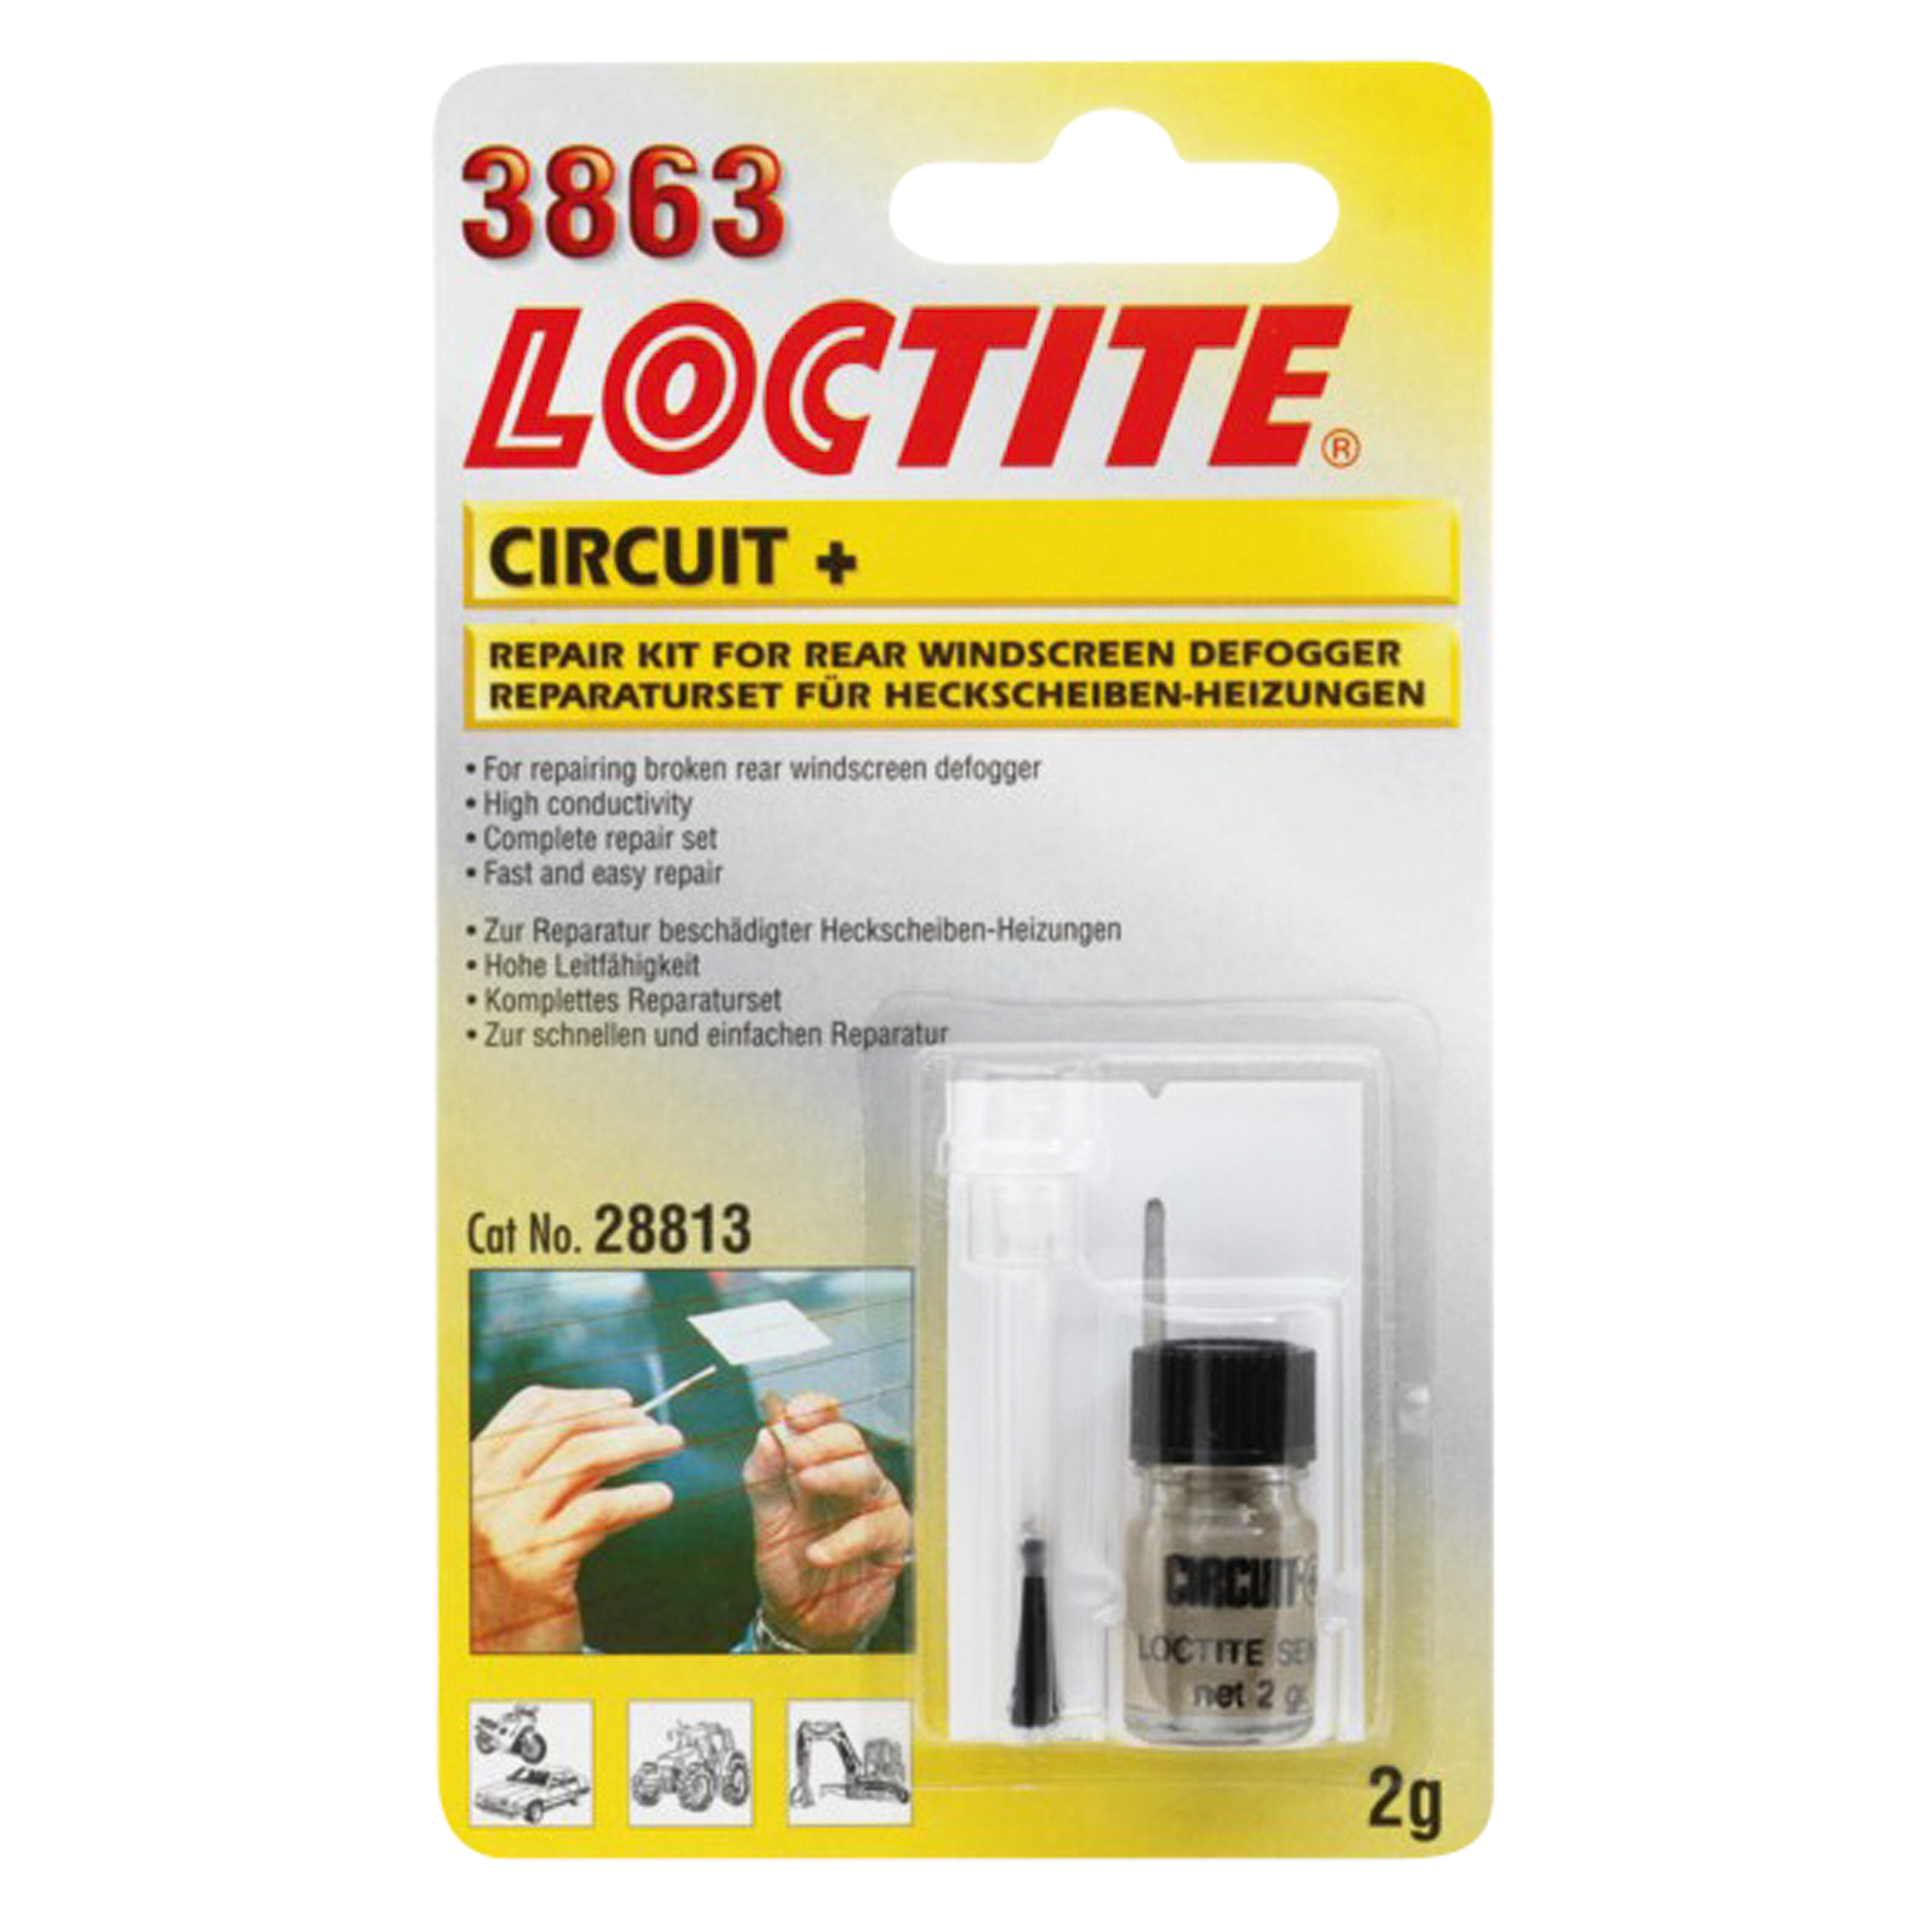 Loctite Loctite 3863 Circuit+ 1831738